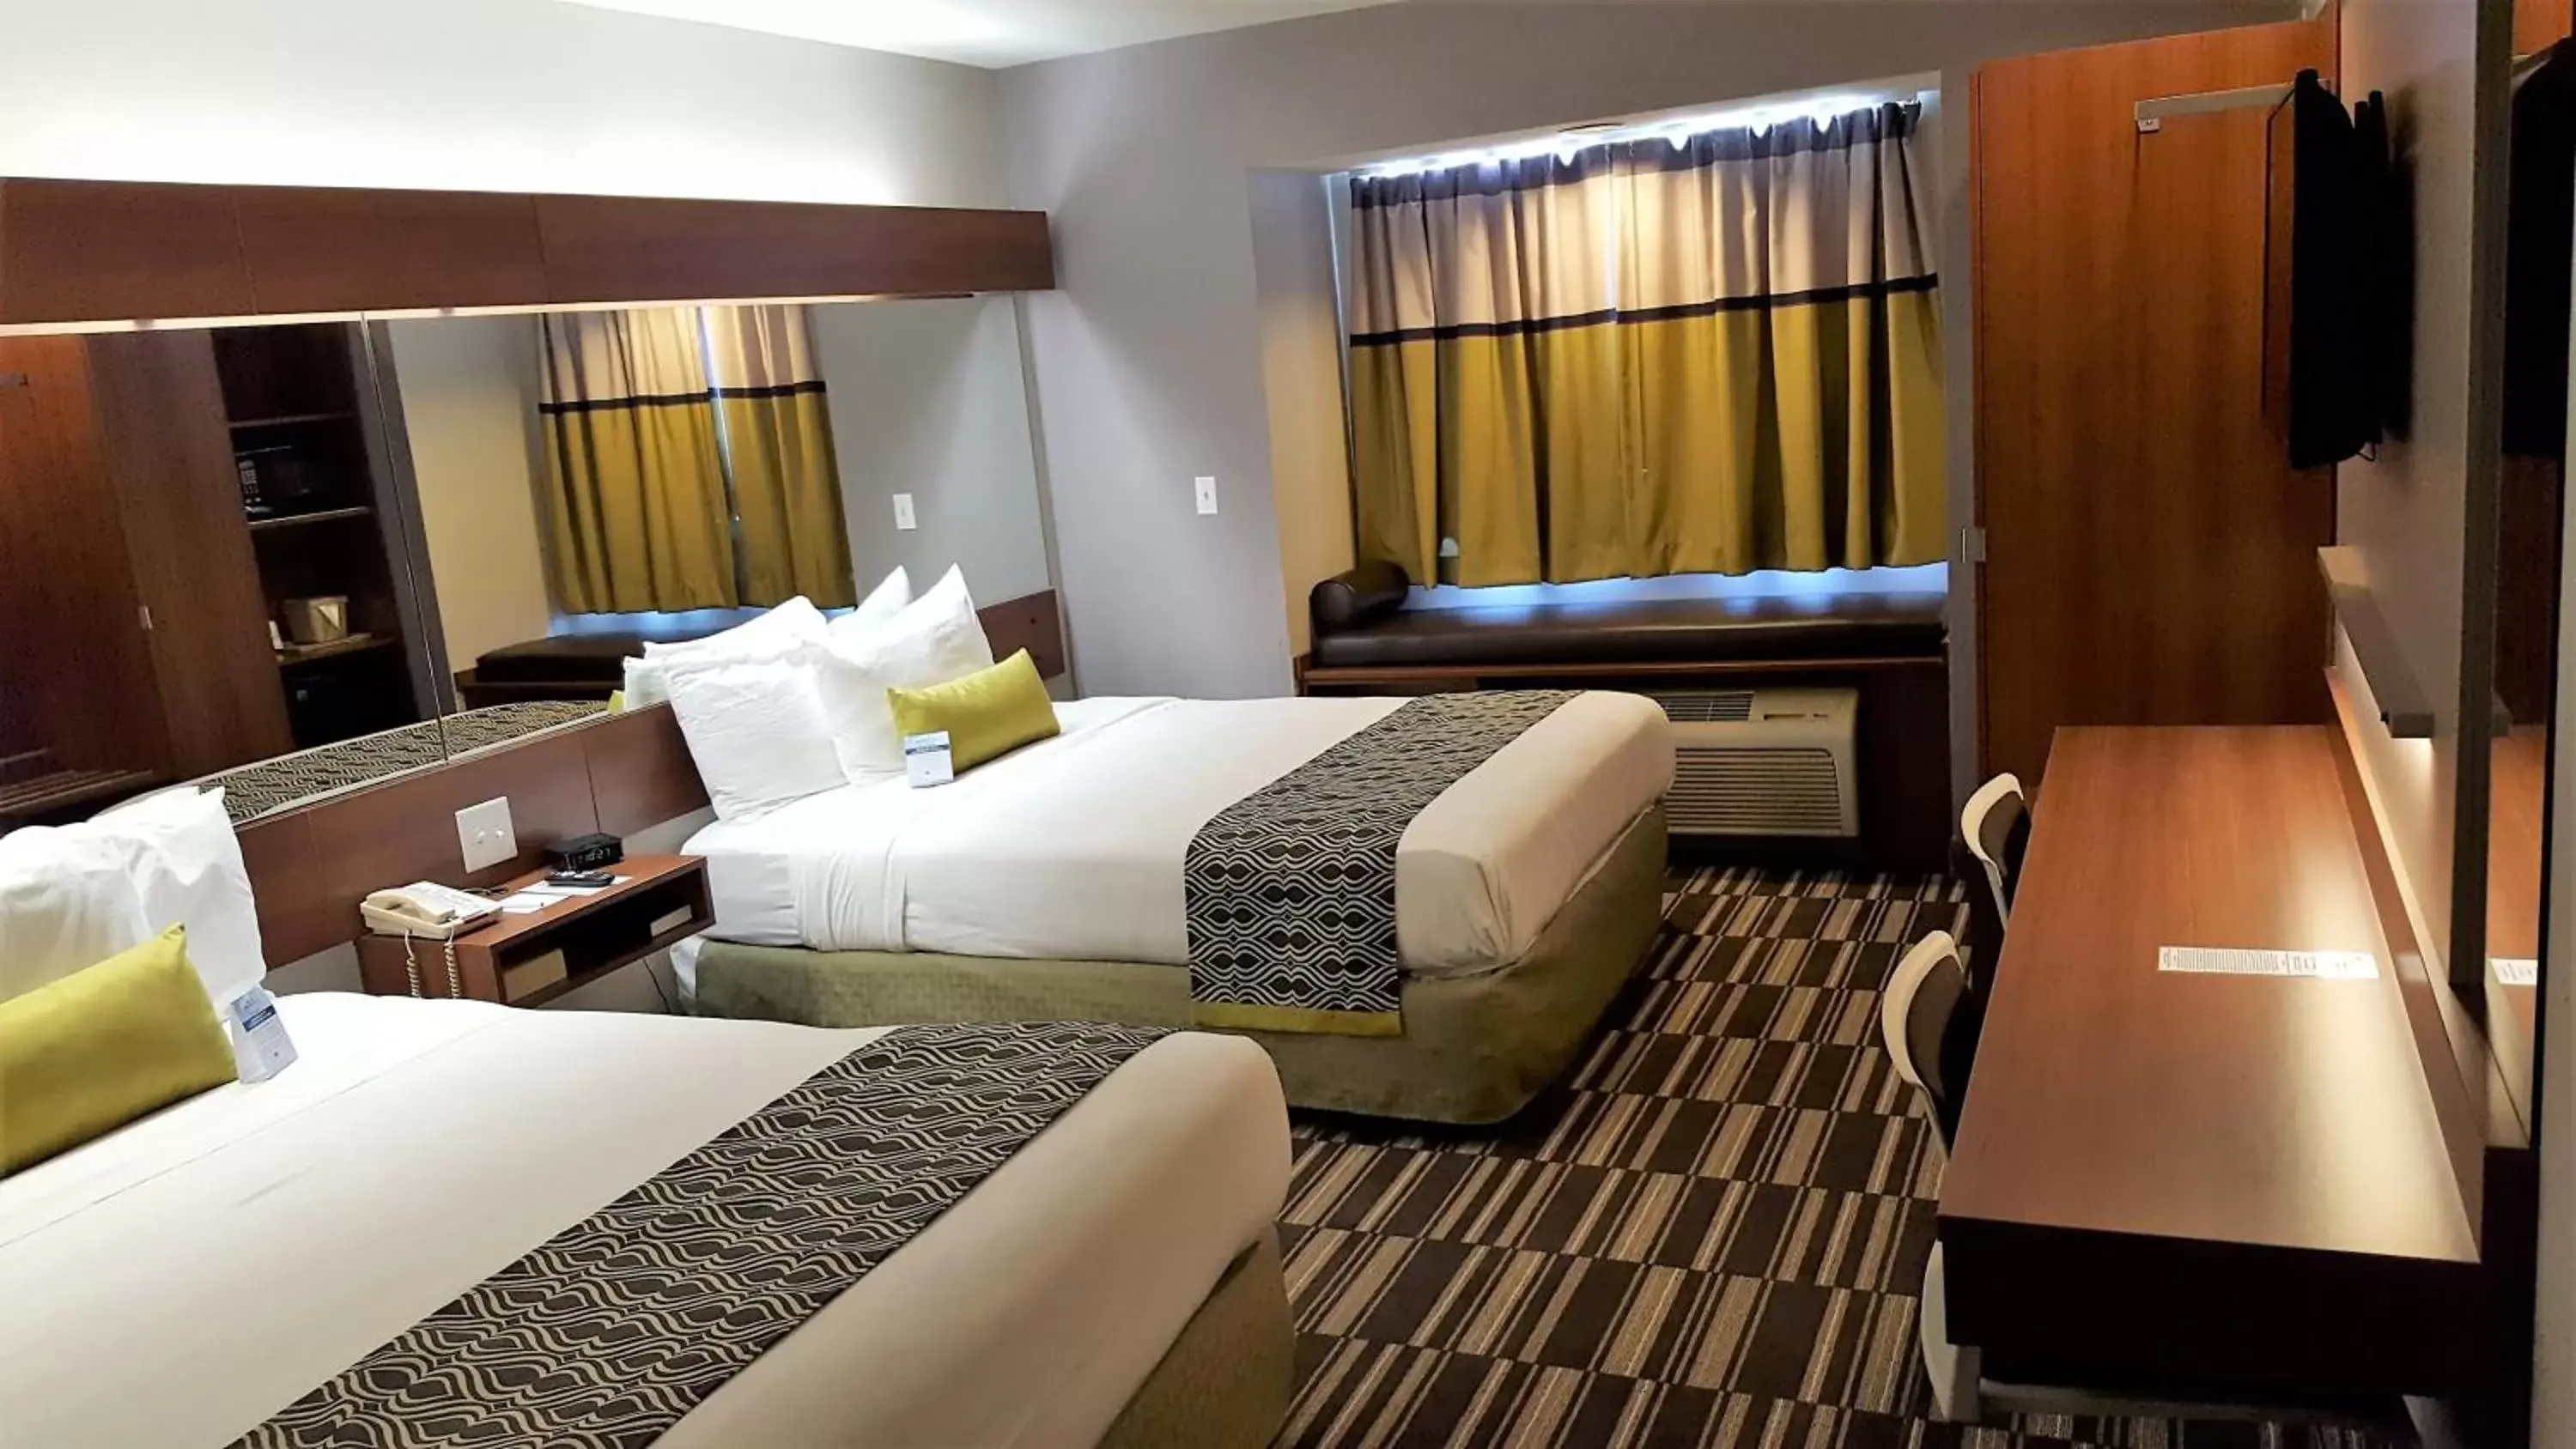 Bed in Microtel Inn & Suites by Wyndham Bellevue